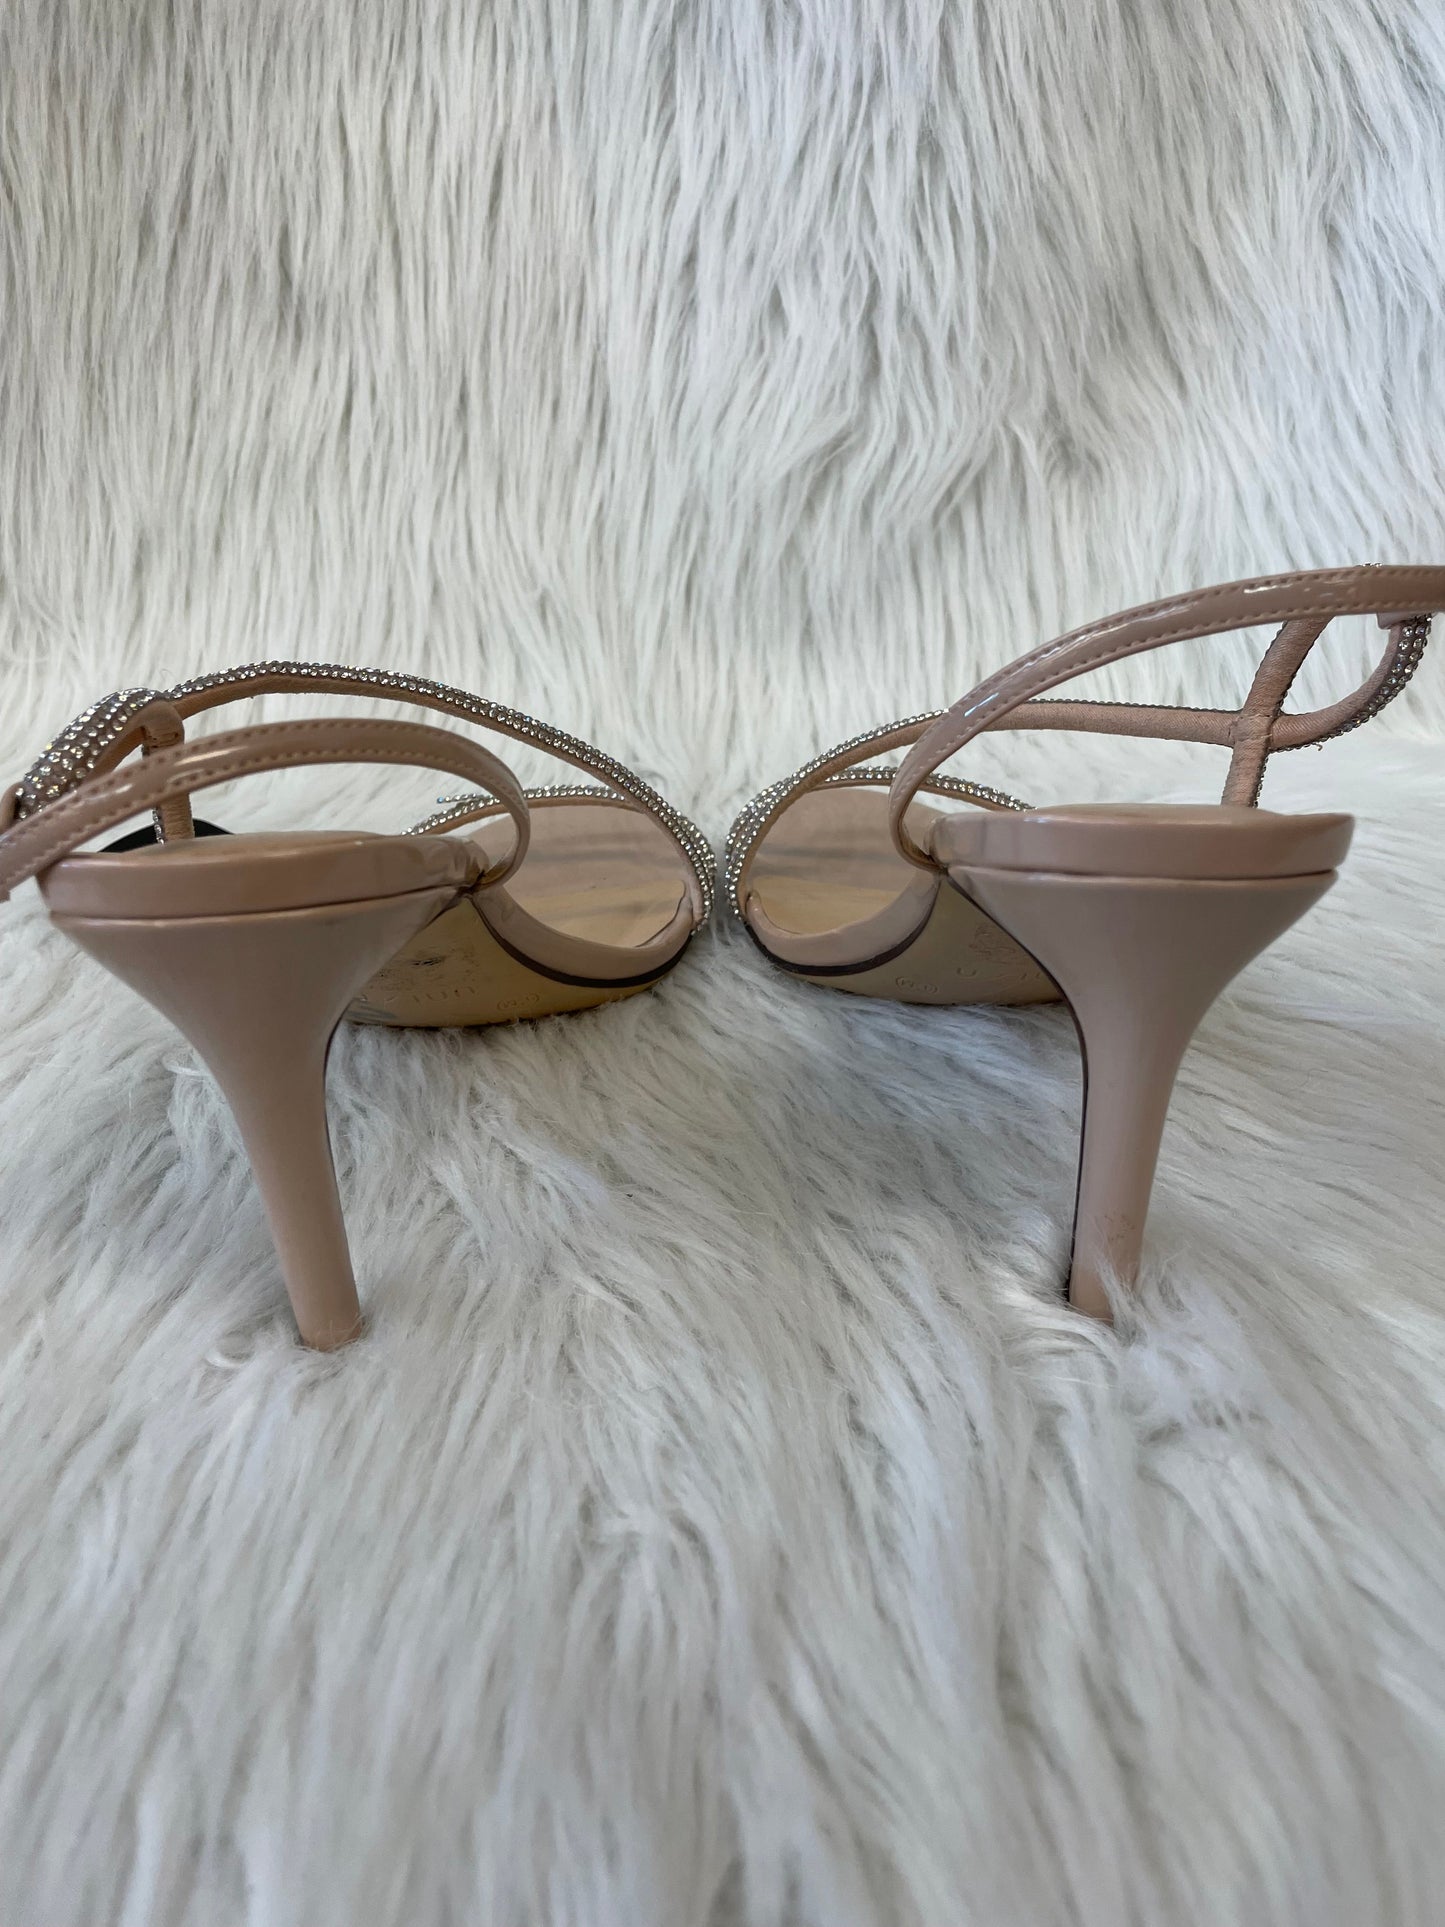 Pink & Silver Sandals Heels Stiletto Unisa, Size 9.5